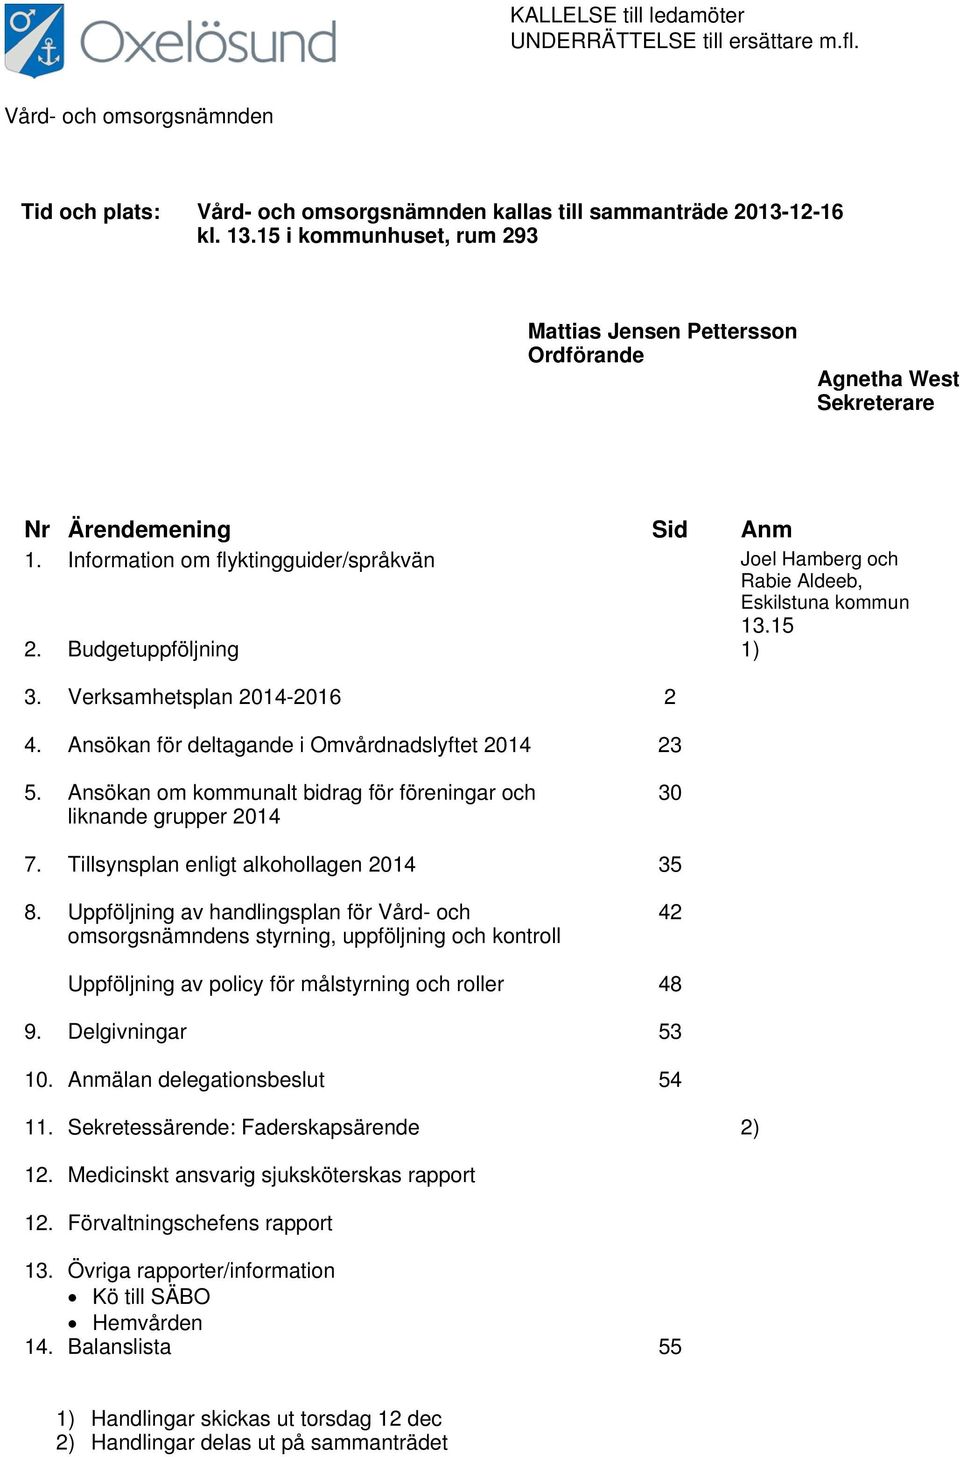 Information om flyktingguider/språkvän Joel Hamberg och Rabie Aldeeb, Eskilstuna kommun 13.15 2. Budgetuppföljning 1) 3. Verksamhetsplan 2014-2016 2 4.